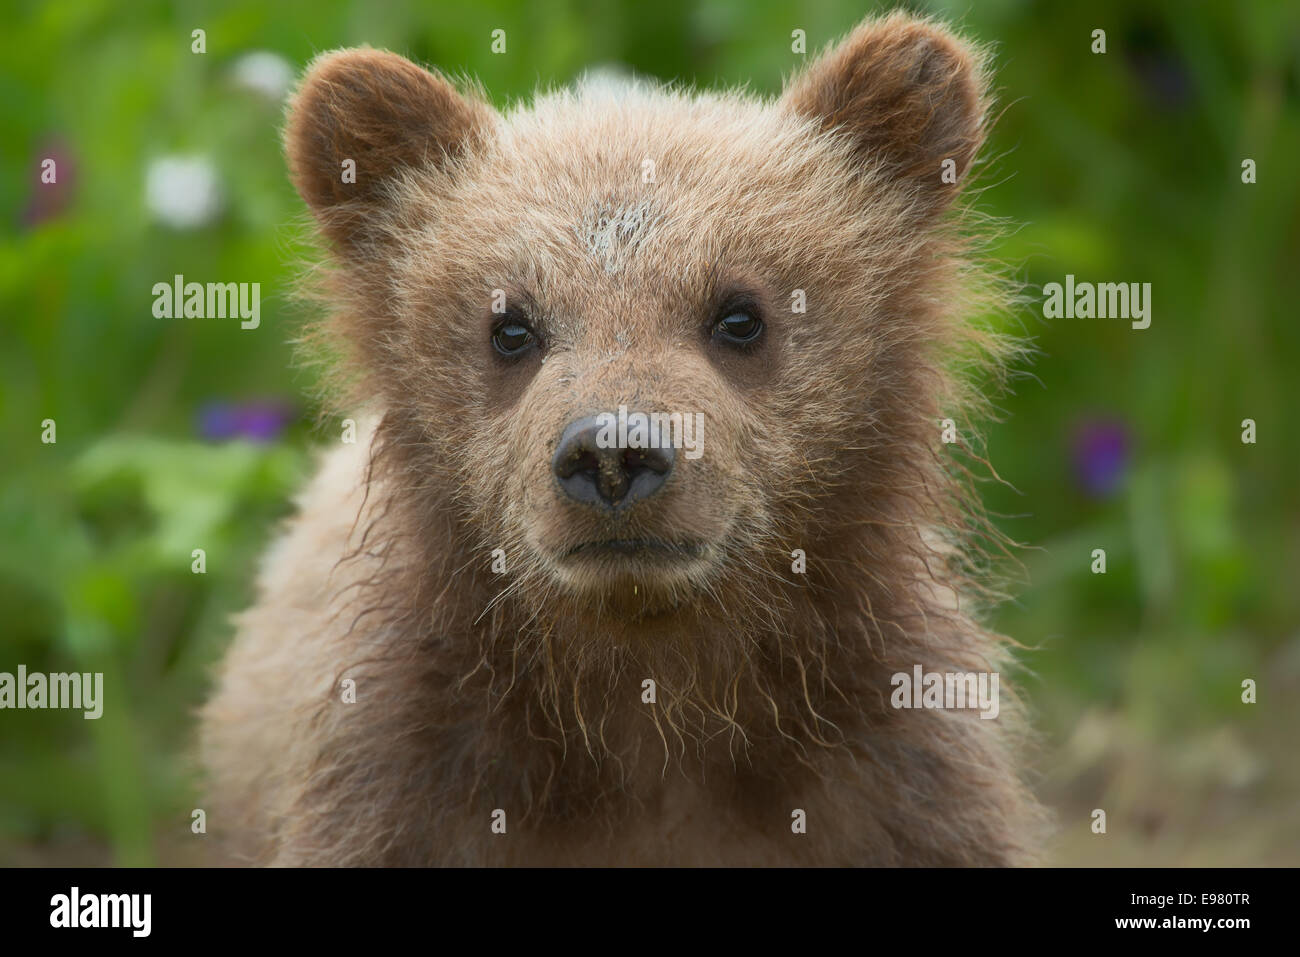 A close up of an Alaska Brown bear cub. Stock Photo